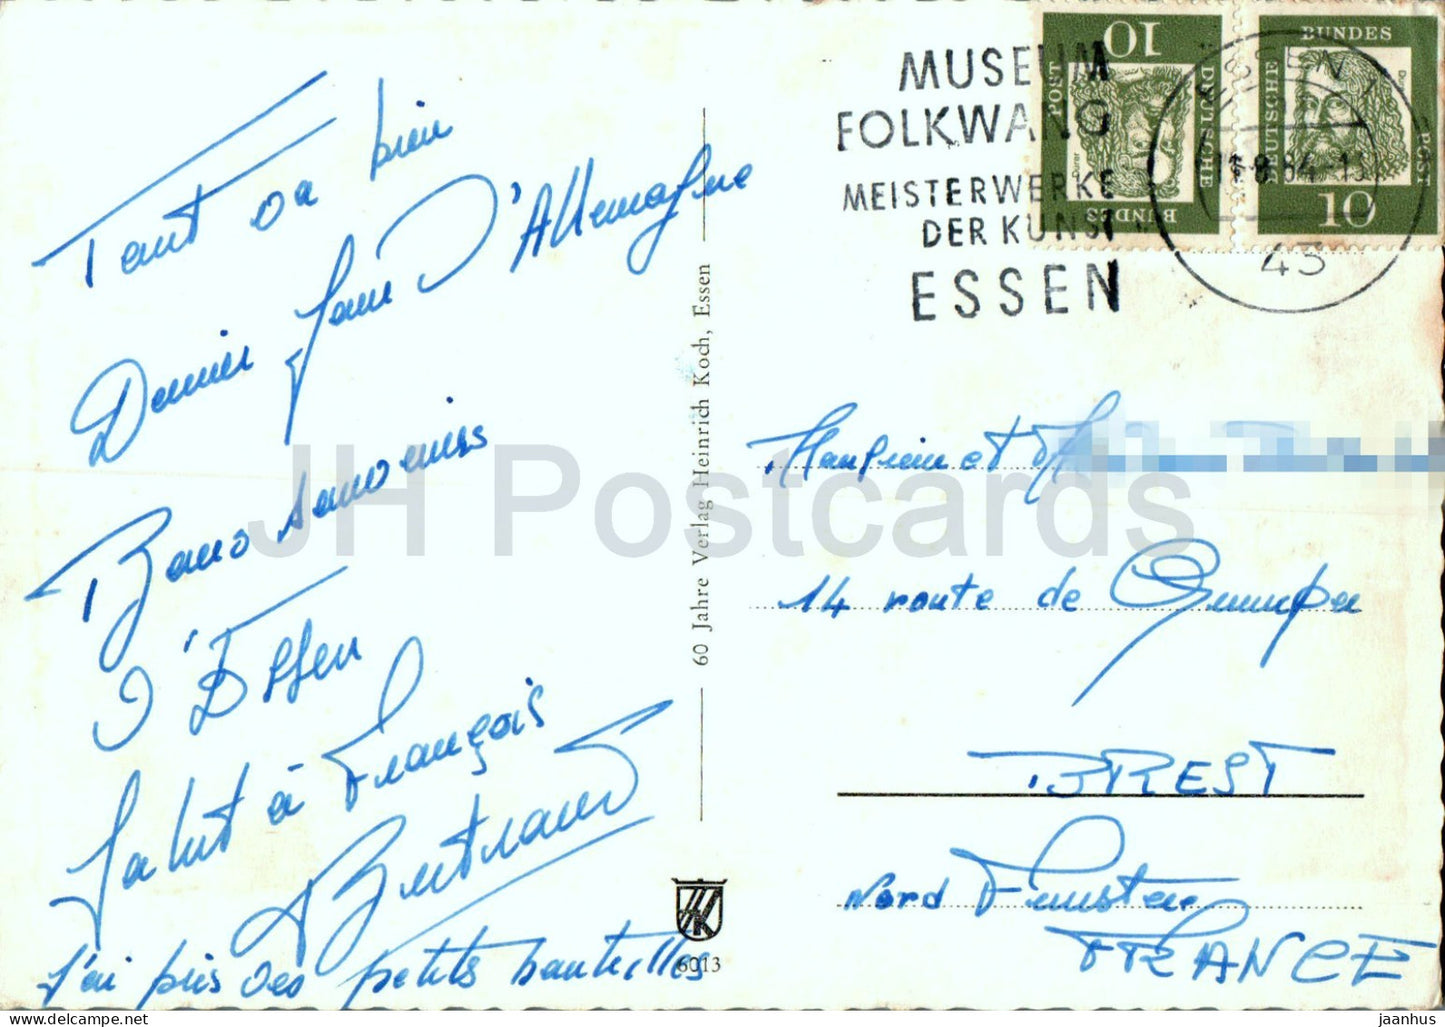 Essen - Handelshof - Opernhaus - Gruga Park - Saalbau - multiview - 6013 - 1964 - Germany - used